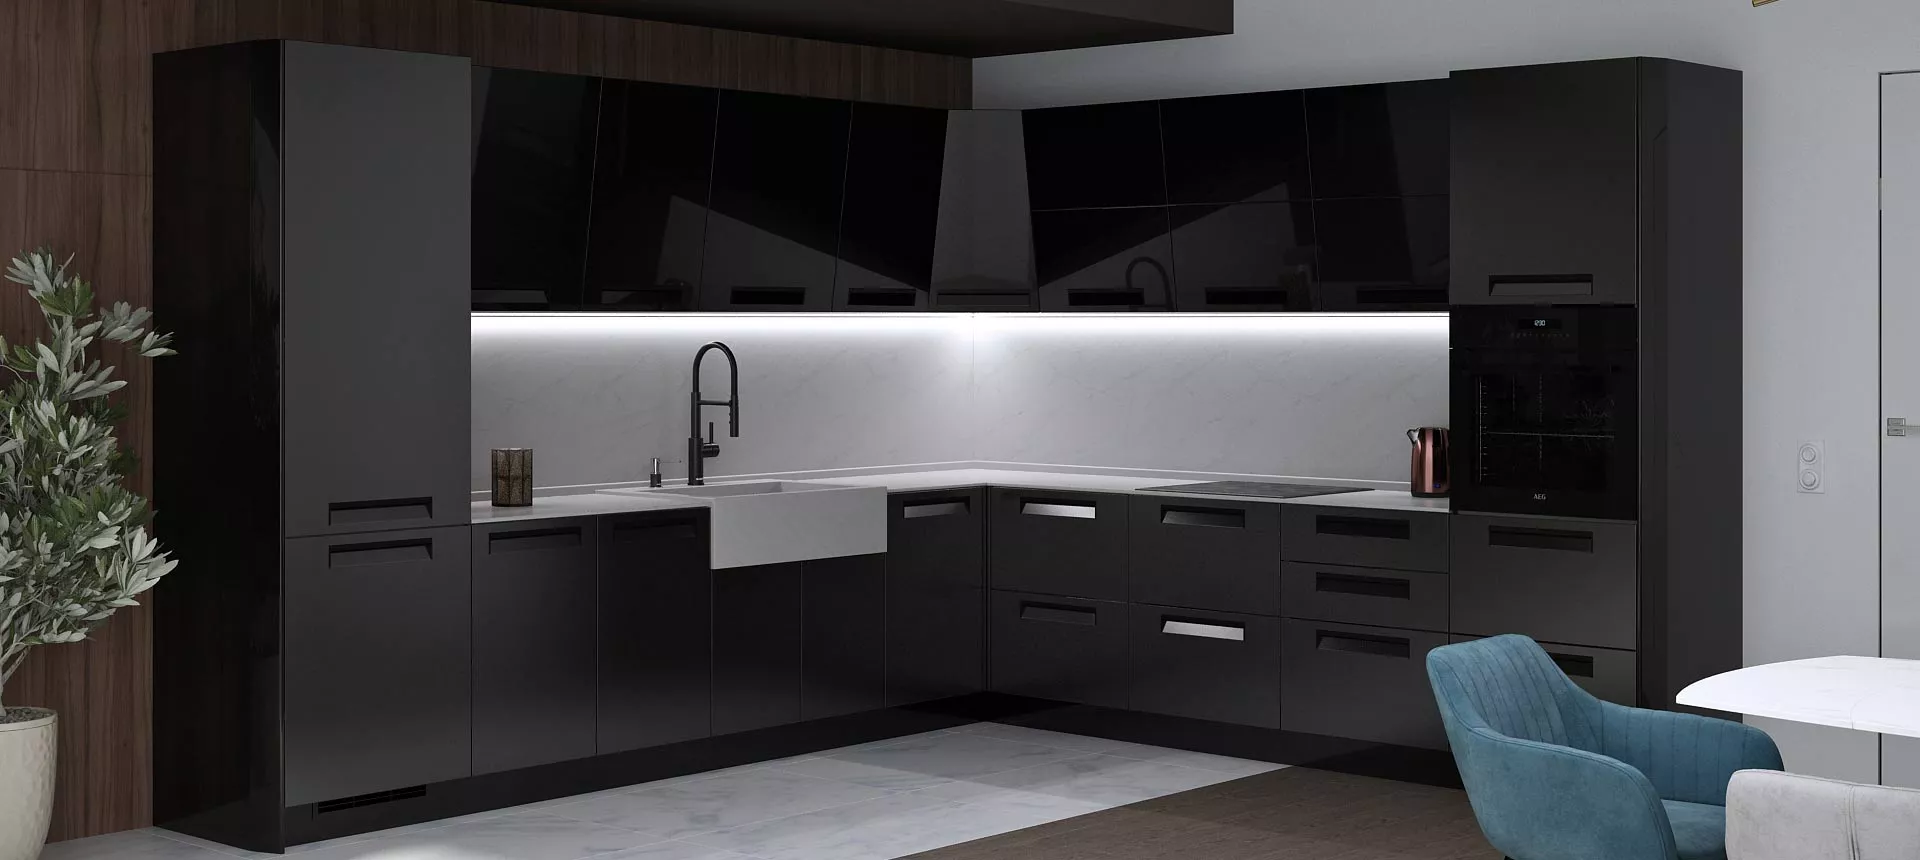 Черная кухня: 20 фото интерьеров и идеи гарнитура в черном цвете